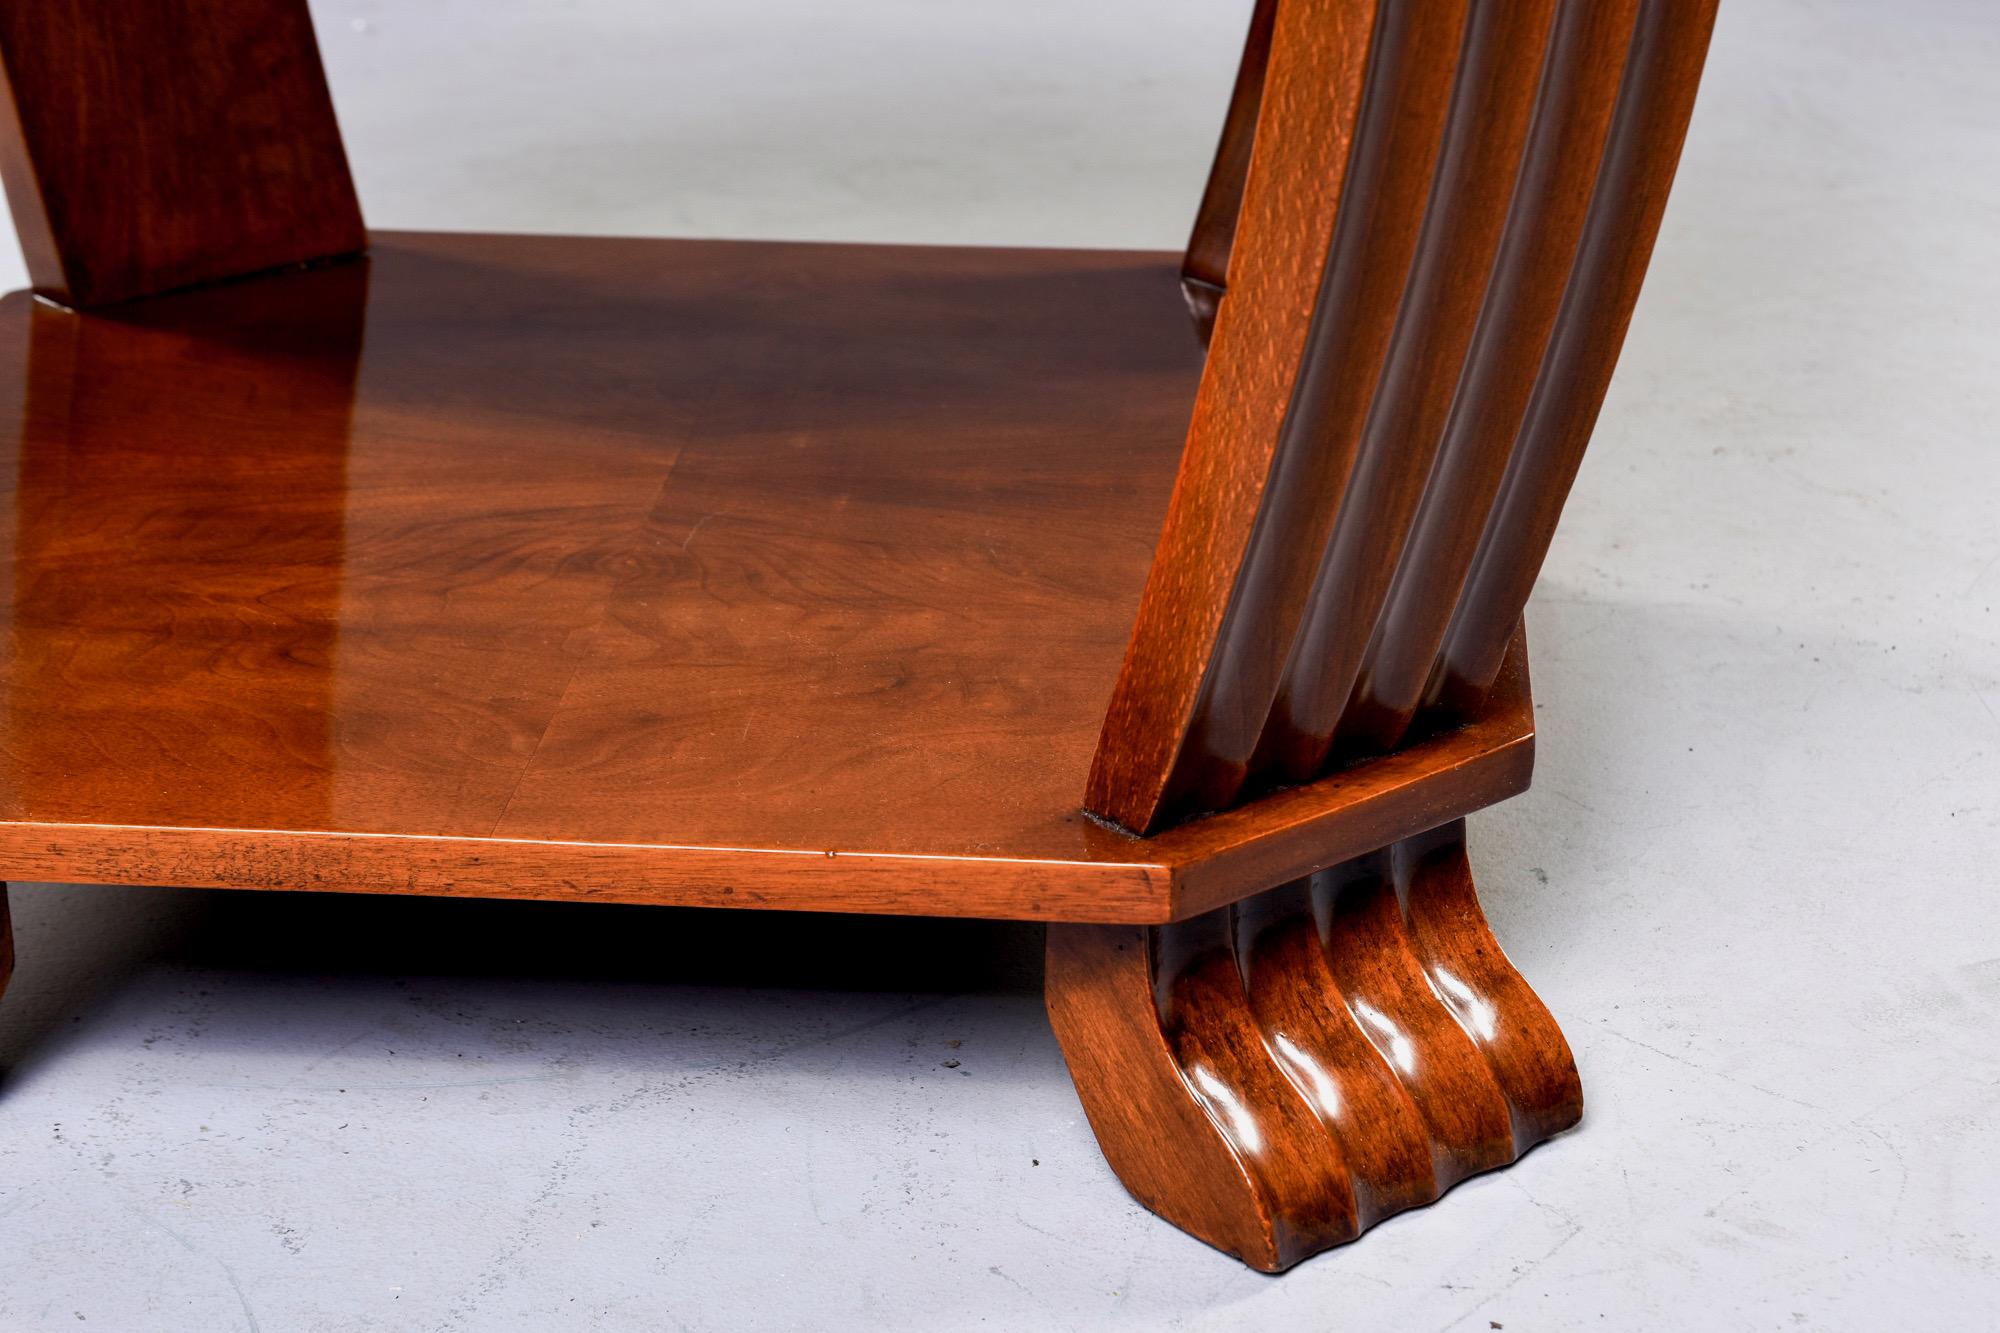 Achtseitiger französischer Art-Déco-Tisch aus Nussbaumholz mit schwarzer Lederplatte, um 1930. Gerippte Stützen/Beine und Füße, untere Etage mit buchfarbenem Furnier. Unbekannter Hersteller. Insgesamt sehr guter Vintage-Zustand.